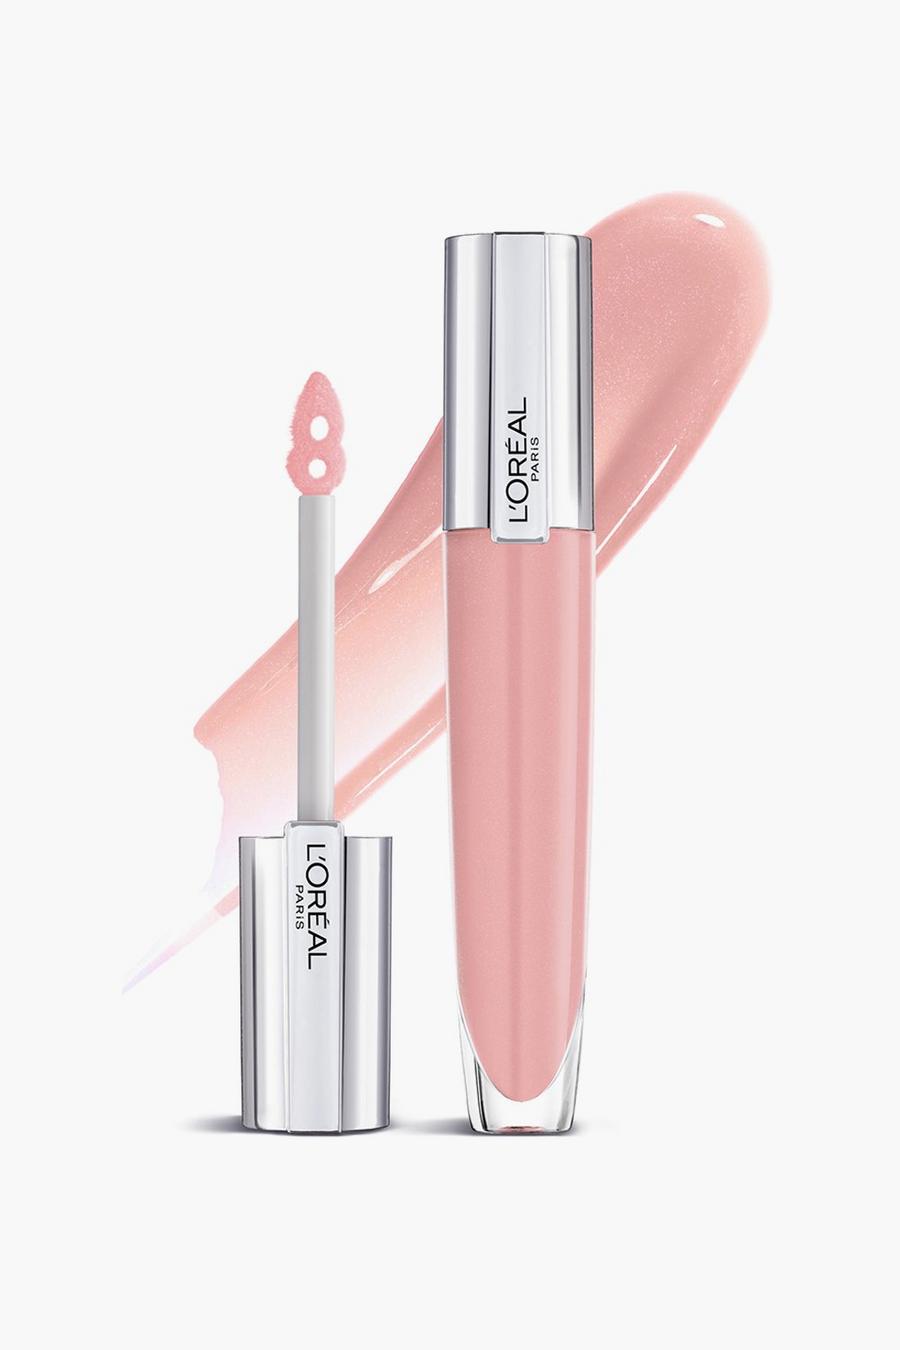 L'Oréal Paris - Gloss repulpant - Soar, Pink